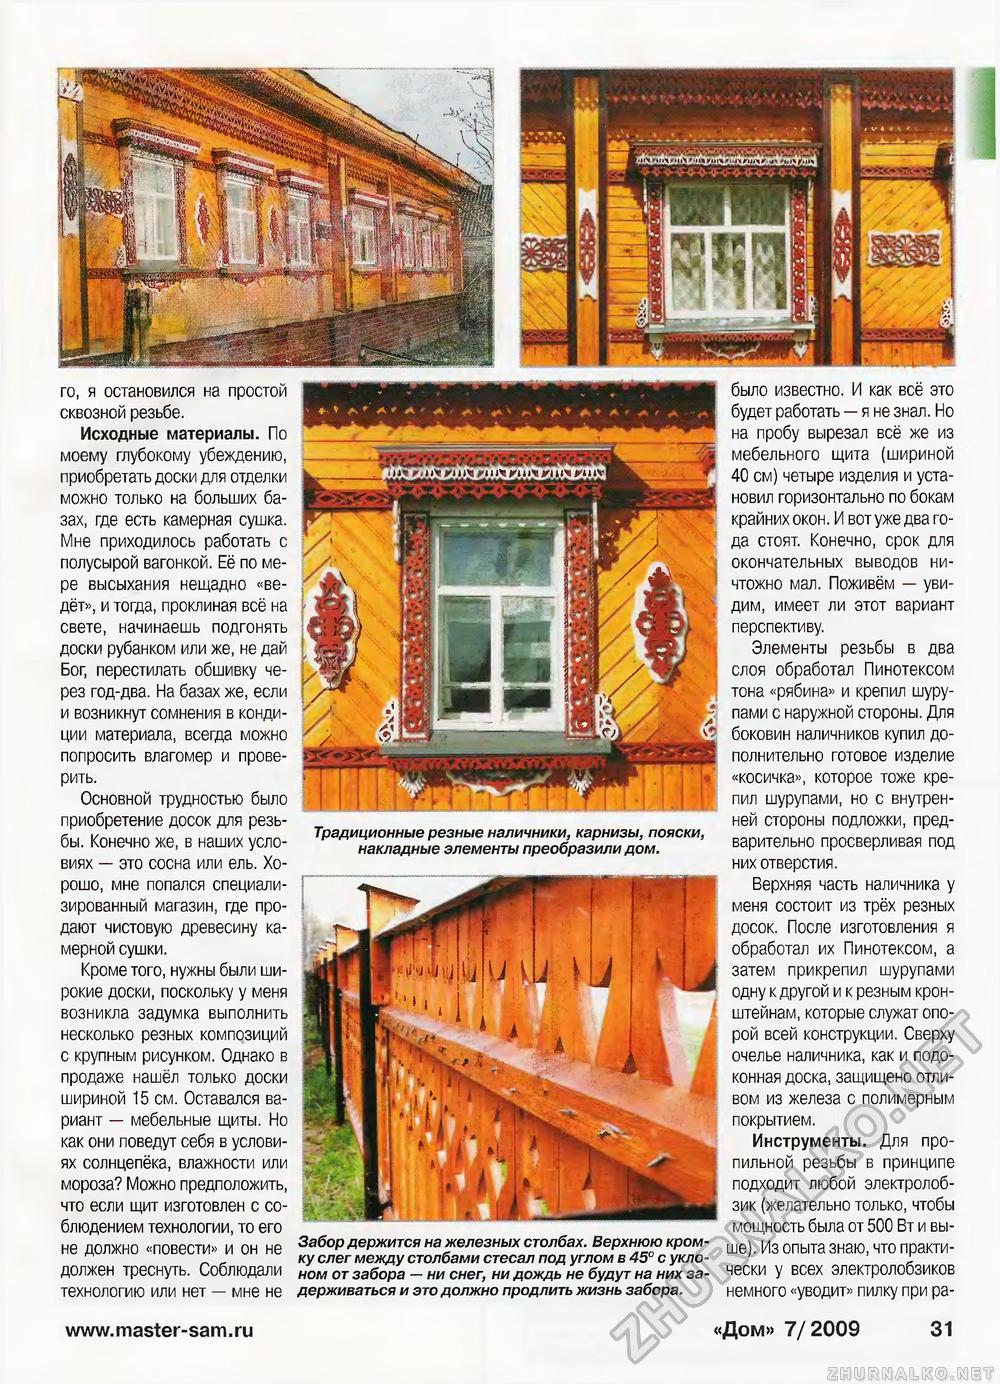 Дом 2009-07, страница 31